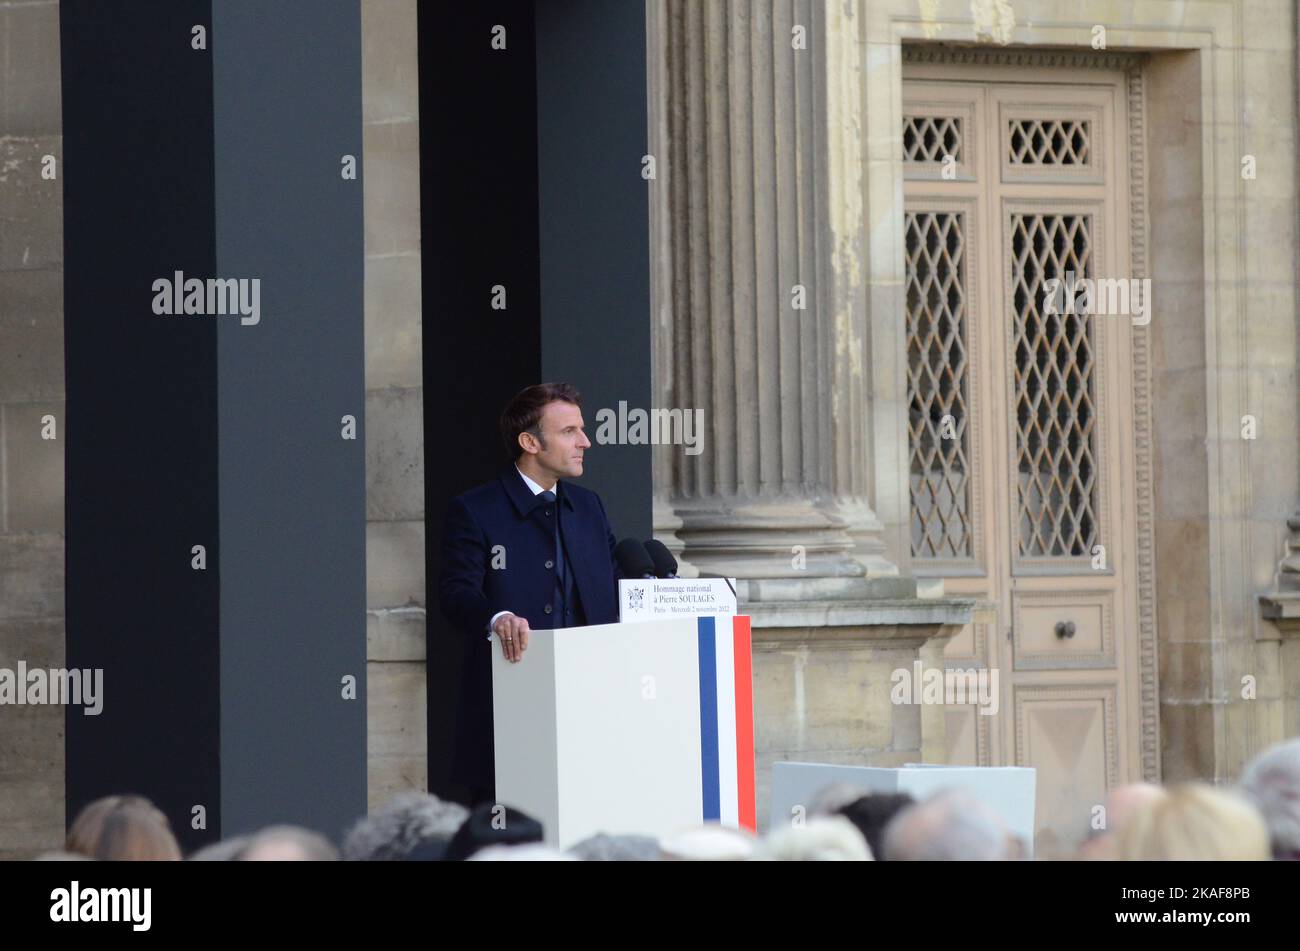 Hommage national pour  l'artiste peintre Pierre Soulages originaire de Rodez, le président de la république Emmanuel Macron prononce un long discours Stock Photo